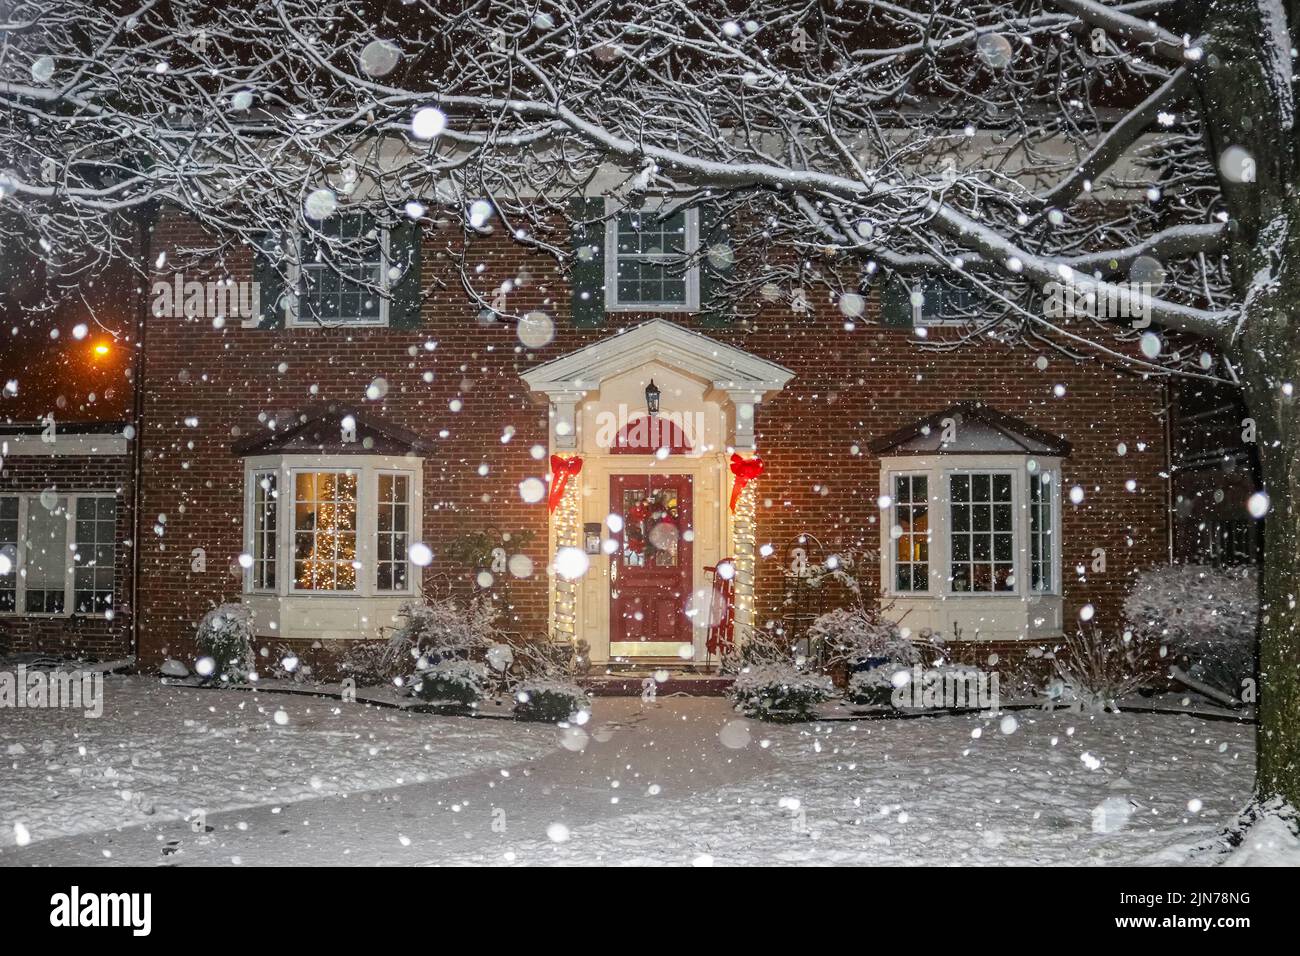 Chute de neige sur une belle maison en briques avec colonnes et baies vitrées avec arbre de Noël illuminé et traîneau rouge et couronne sur le porche Banque D'Images